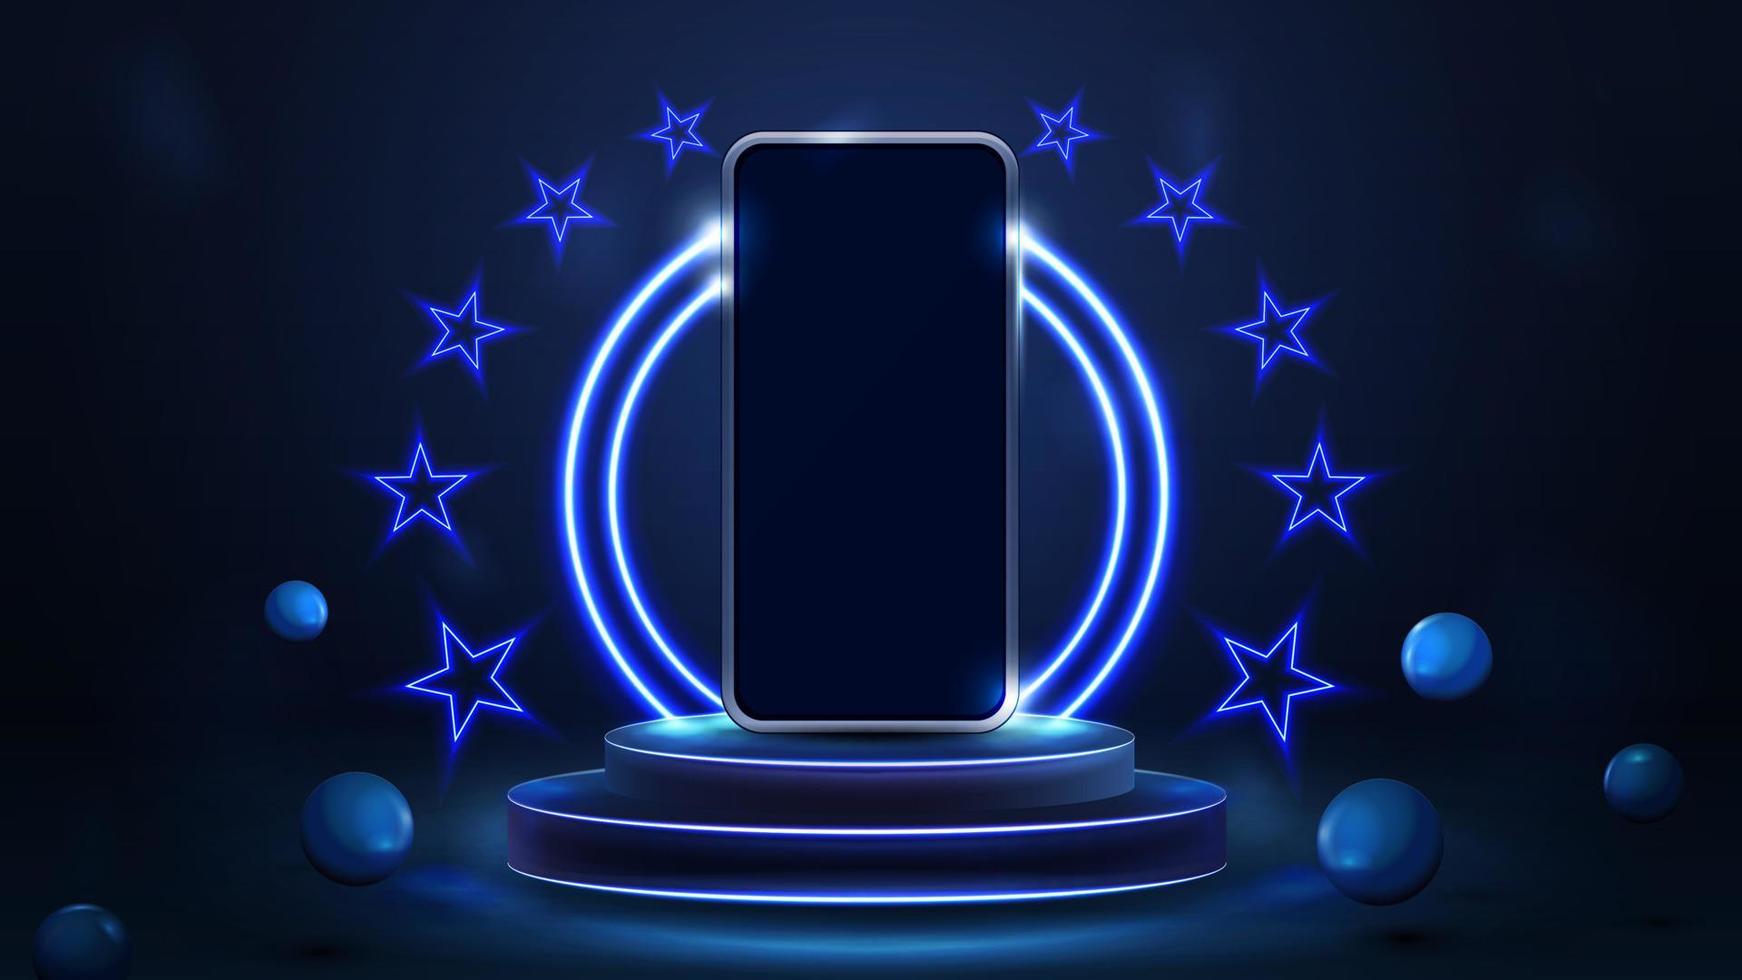 smartphone sur le podium des gagnants avec des anneaux de néon bleus et des étoiles de néon dans une scène bleue avec des sphères rebondissantes réalistes vecteur